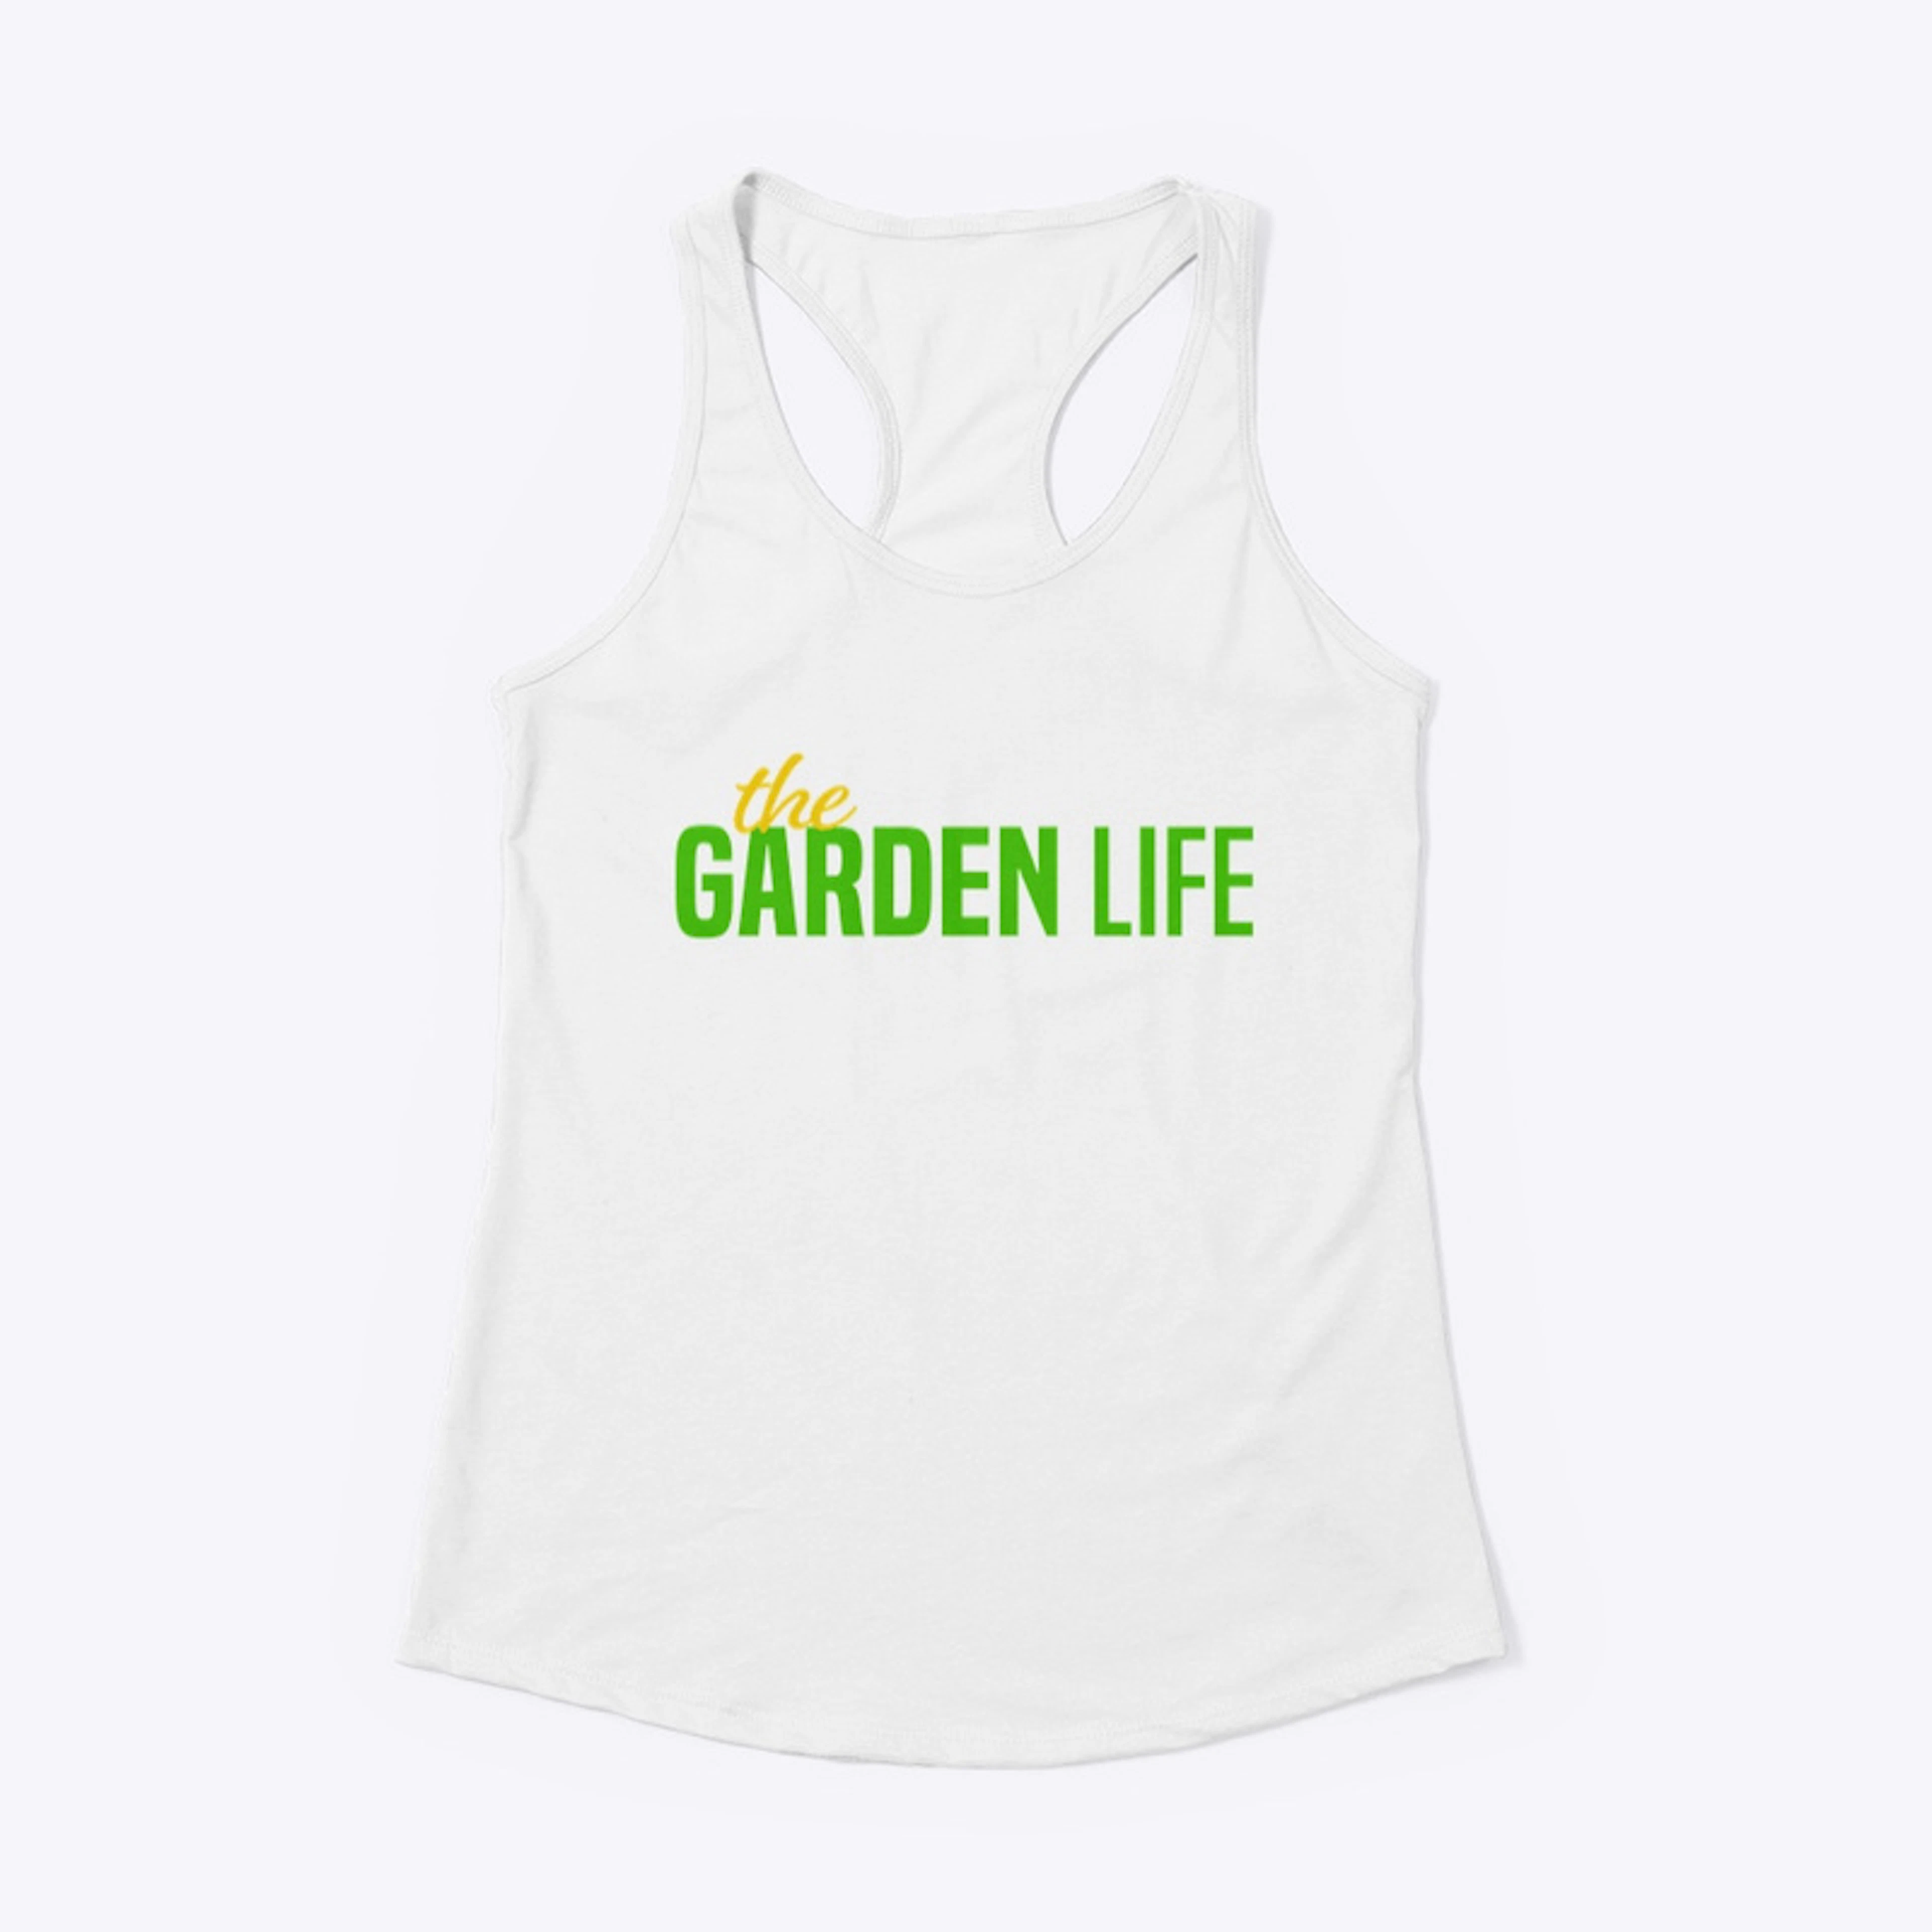 The Garden Life Official T-Shirt